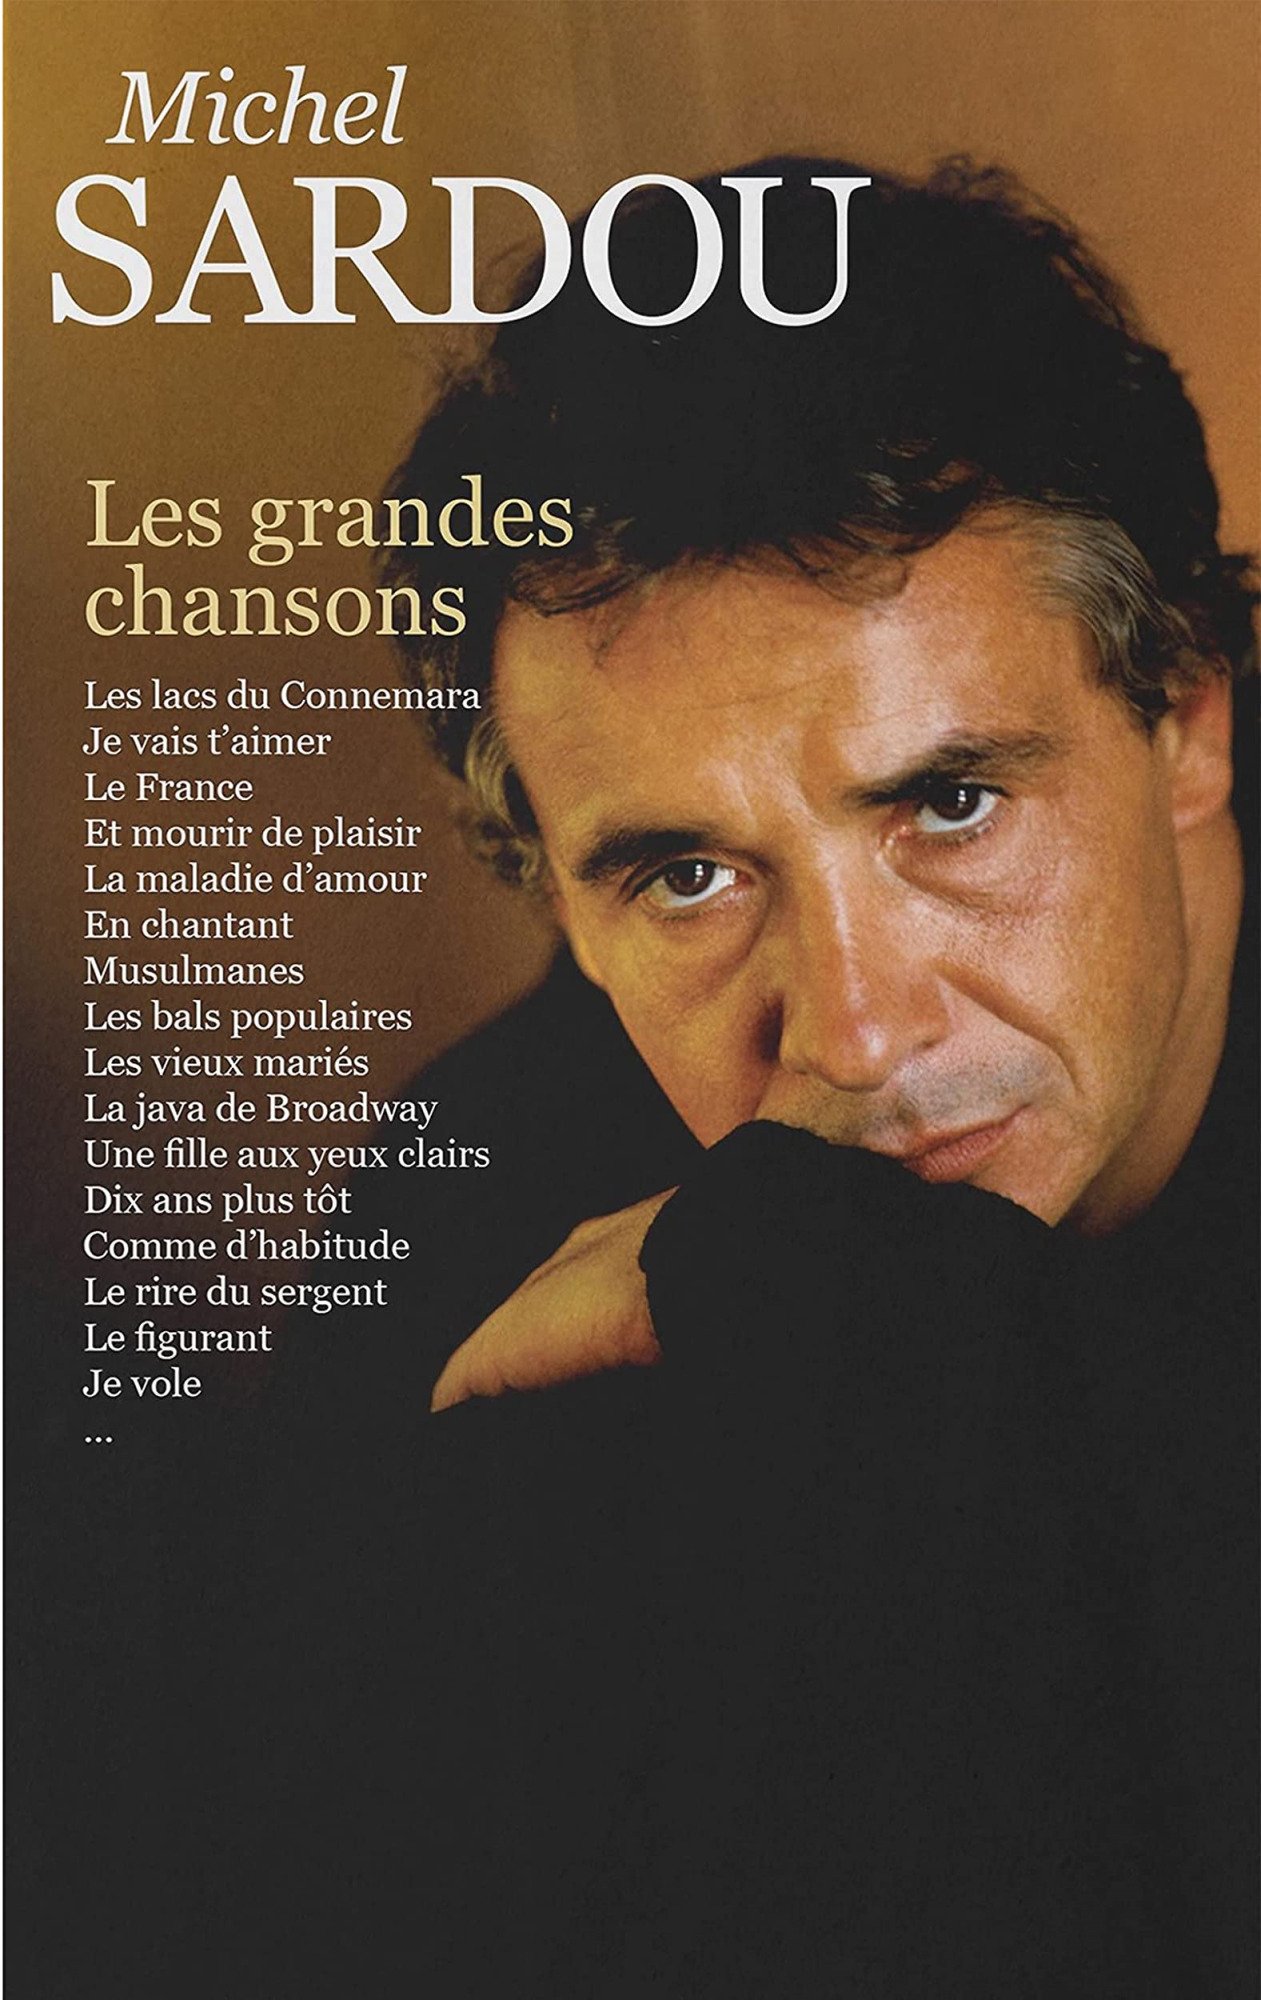 CD Shop - MICHEL SARDOU LES GRANDES CHANSONS